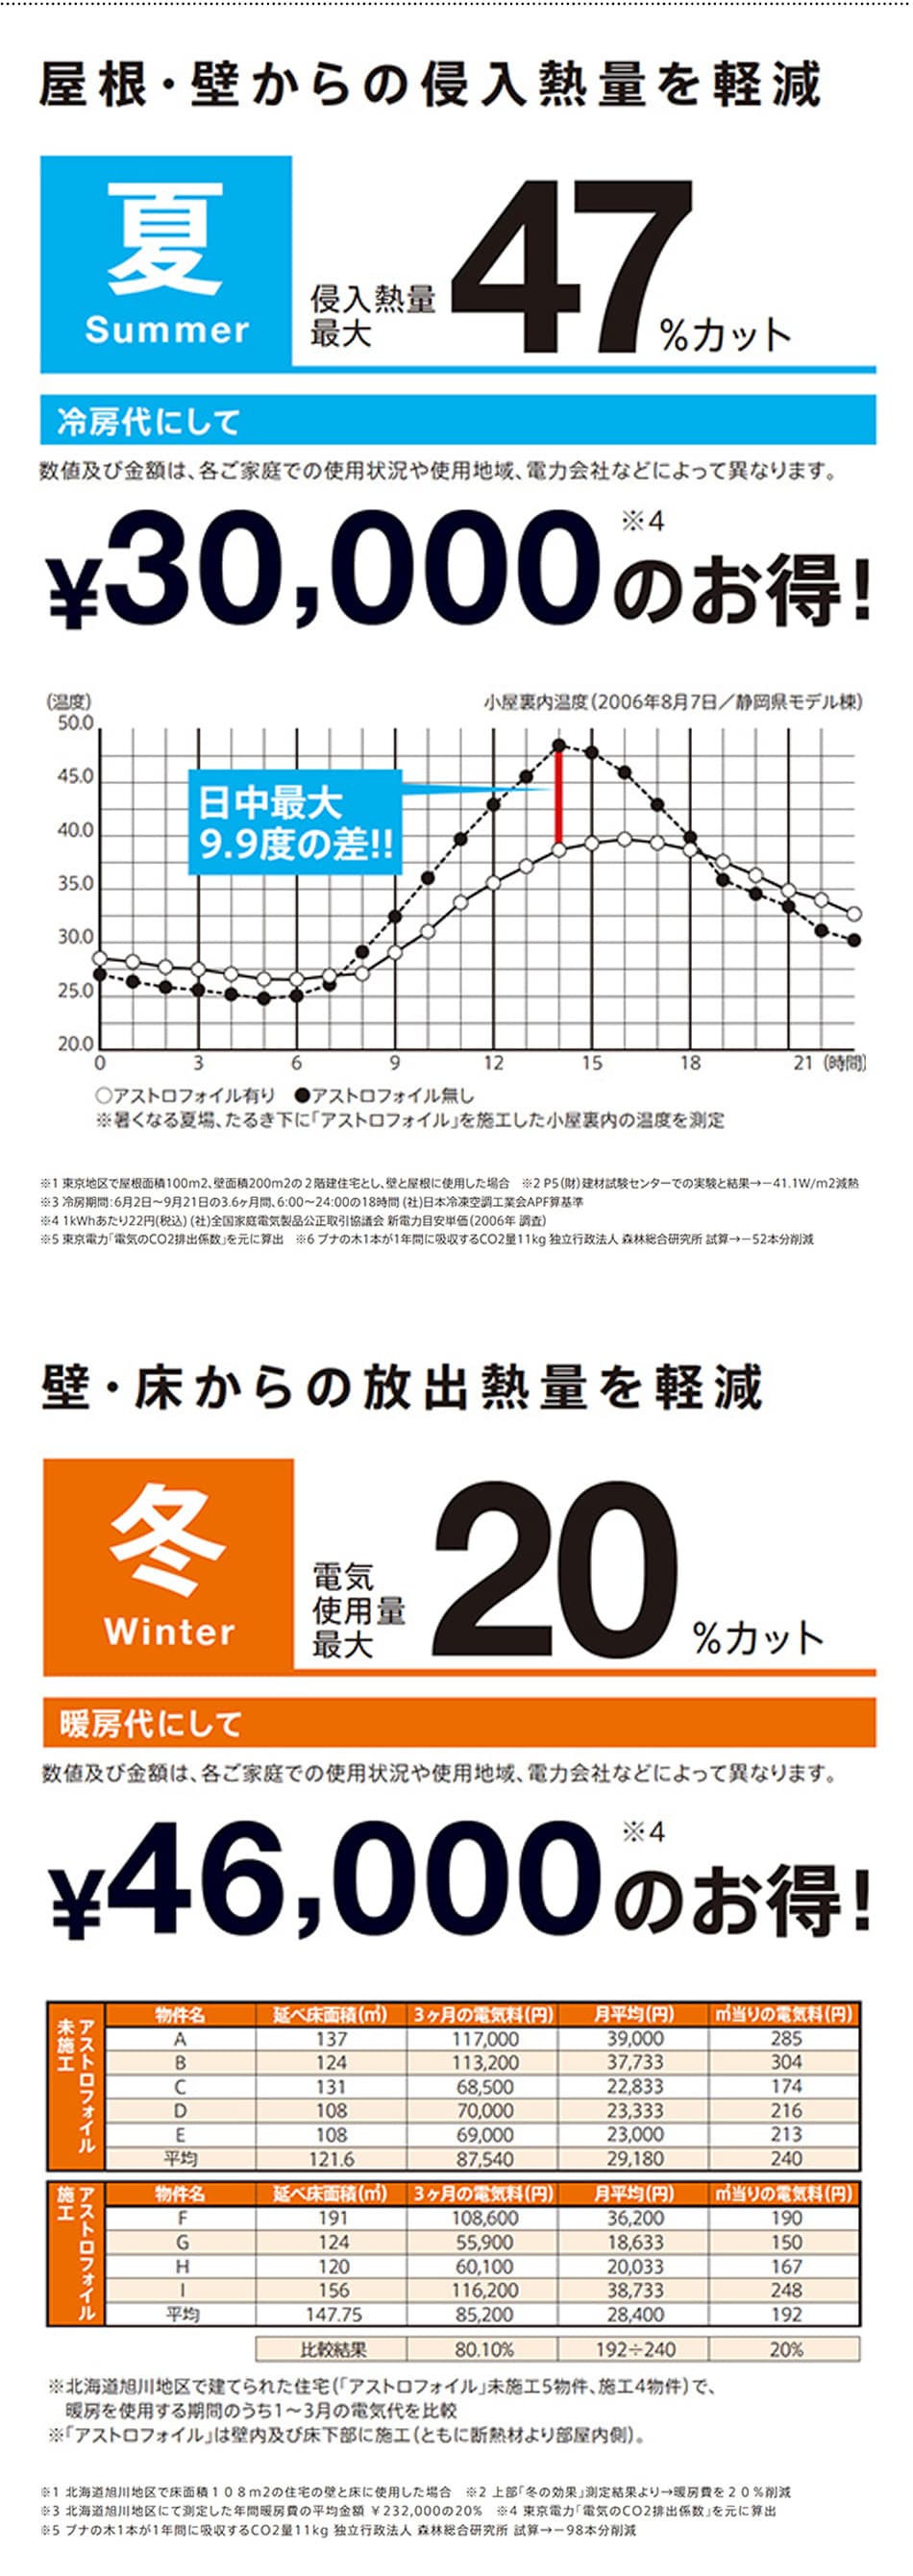 冬を想定した遮熱材の実証実験データの図表　暖房費に換算して46000円の節約効果